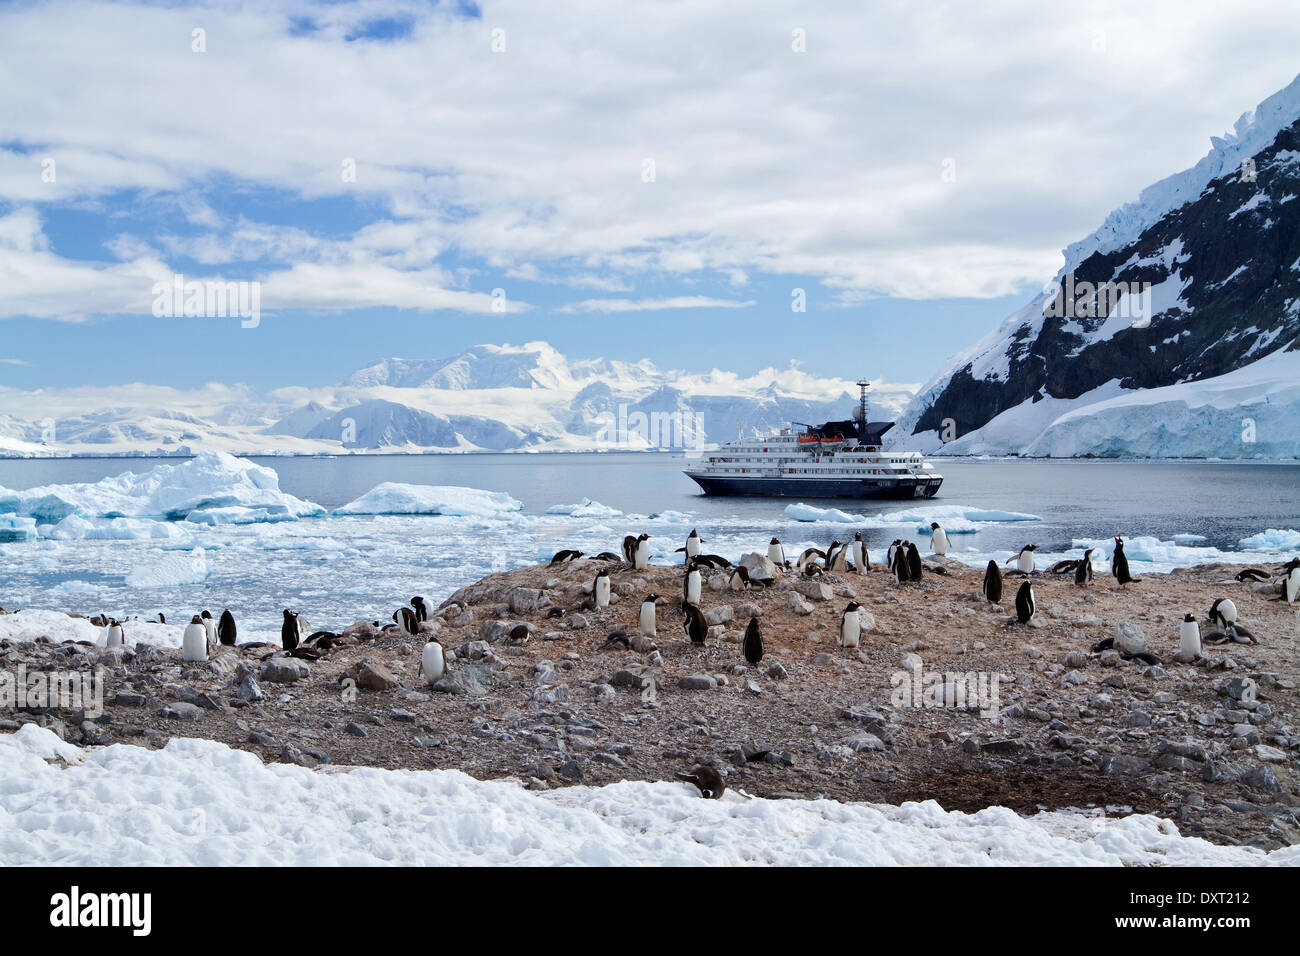 Bateau de croisière antarctique avec l'expédition Antarctique du paysage touristique profitez des pingouins, montagnes, Neko Harbour, Harbour. Banque D'Images